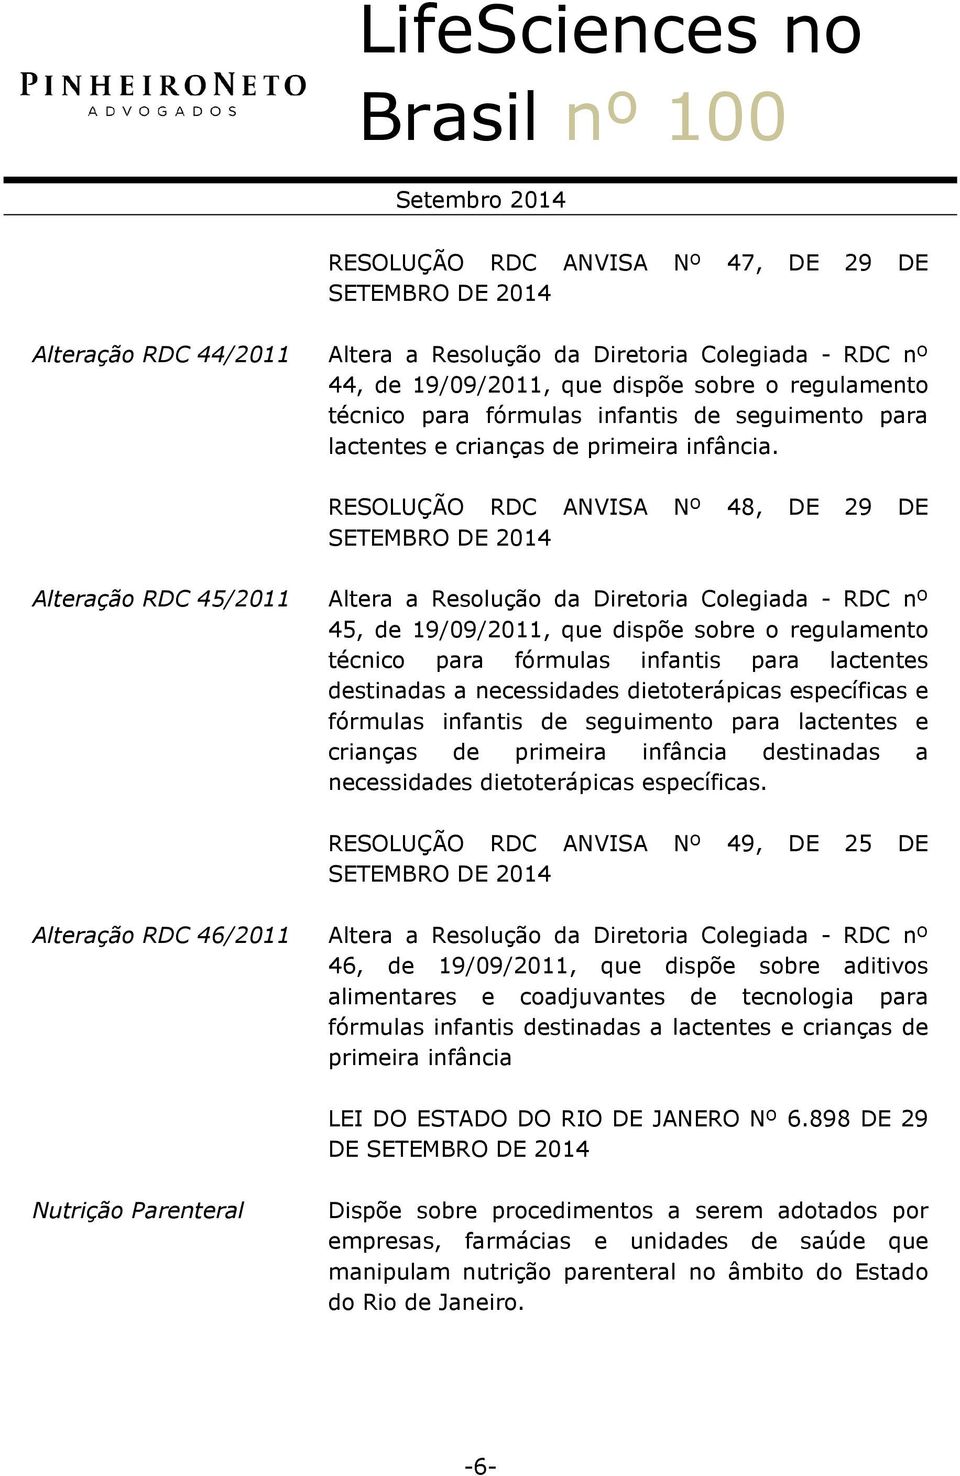 RESOLUÇÃO RDC ANVISA Nº 48, DE 29 DE SETEMBRO DE Alteração RDC 45/2011 Altera a Resolução da Diretoria Colegiada - RDC nº 45, de 19/09/2011, que dispõe sobre o regulamento técnico para fórmulas